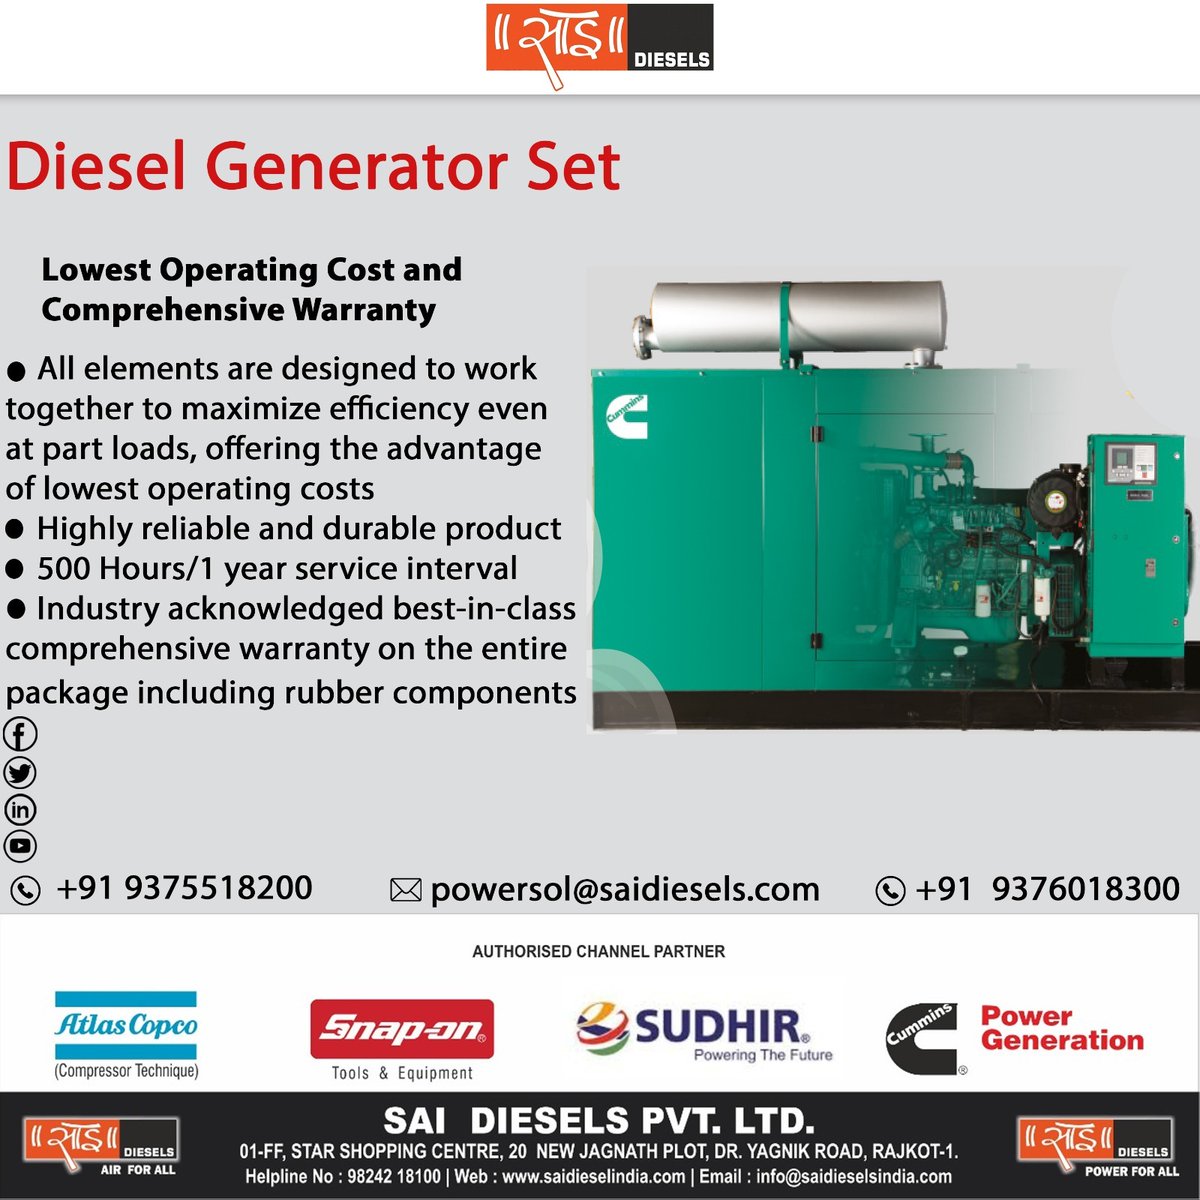 Diesel Generator Set
Lowest Operating Cost and Comprehensive Warranty
.
.
.
#sai #saidiesels #dieselgenerator #ENGINE #alternator #controller #makebattery  #atlascopco #snapontools #dieselgenerator #b5.9series #125kva #enviromentfrindly #rajkotnews #rajkotinstagram #rajkot_igers